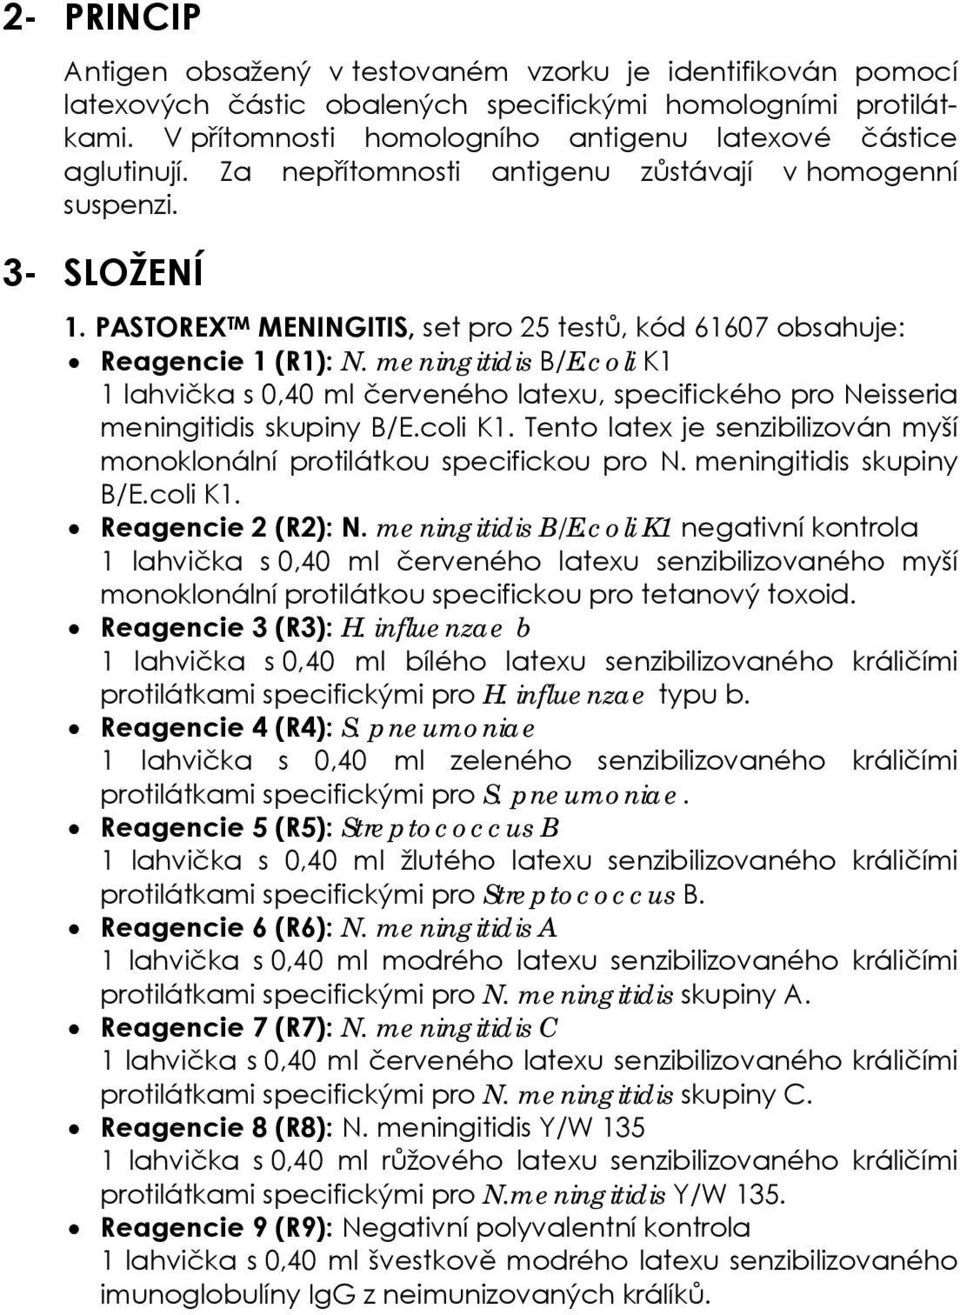 PASTOREX TM MENINGITIS, set pro 25 testů, kód 61607 obsahuje: Reagencie 1 (R1): N. meningitidis B/E.coli K1 1 lahvička s 0,40 ml červeného latexu, specifického pro Neisseria meningitidis skupiny B/E.